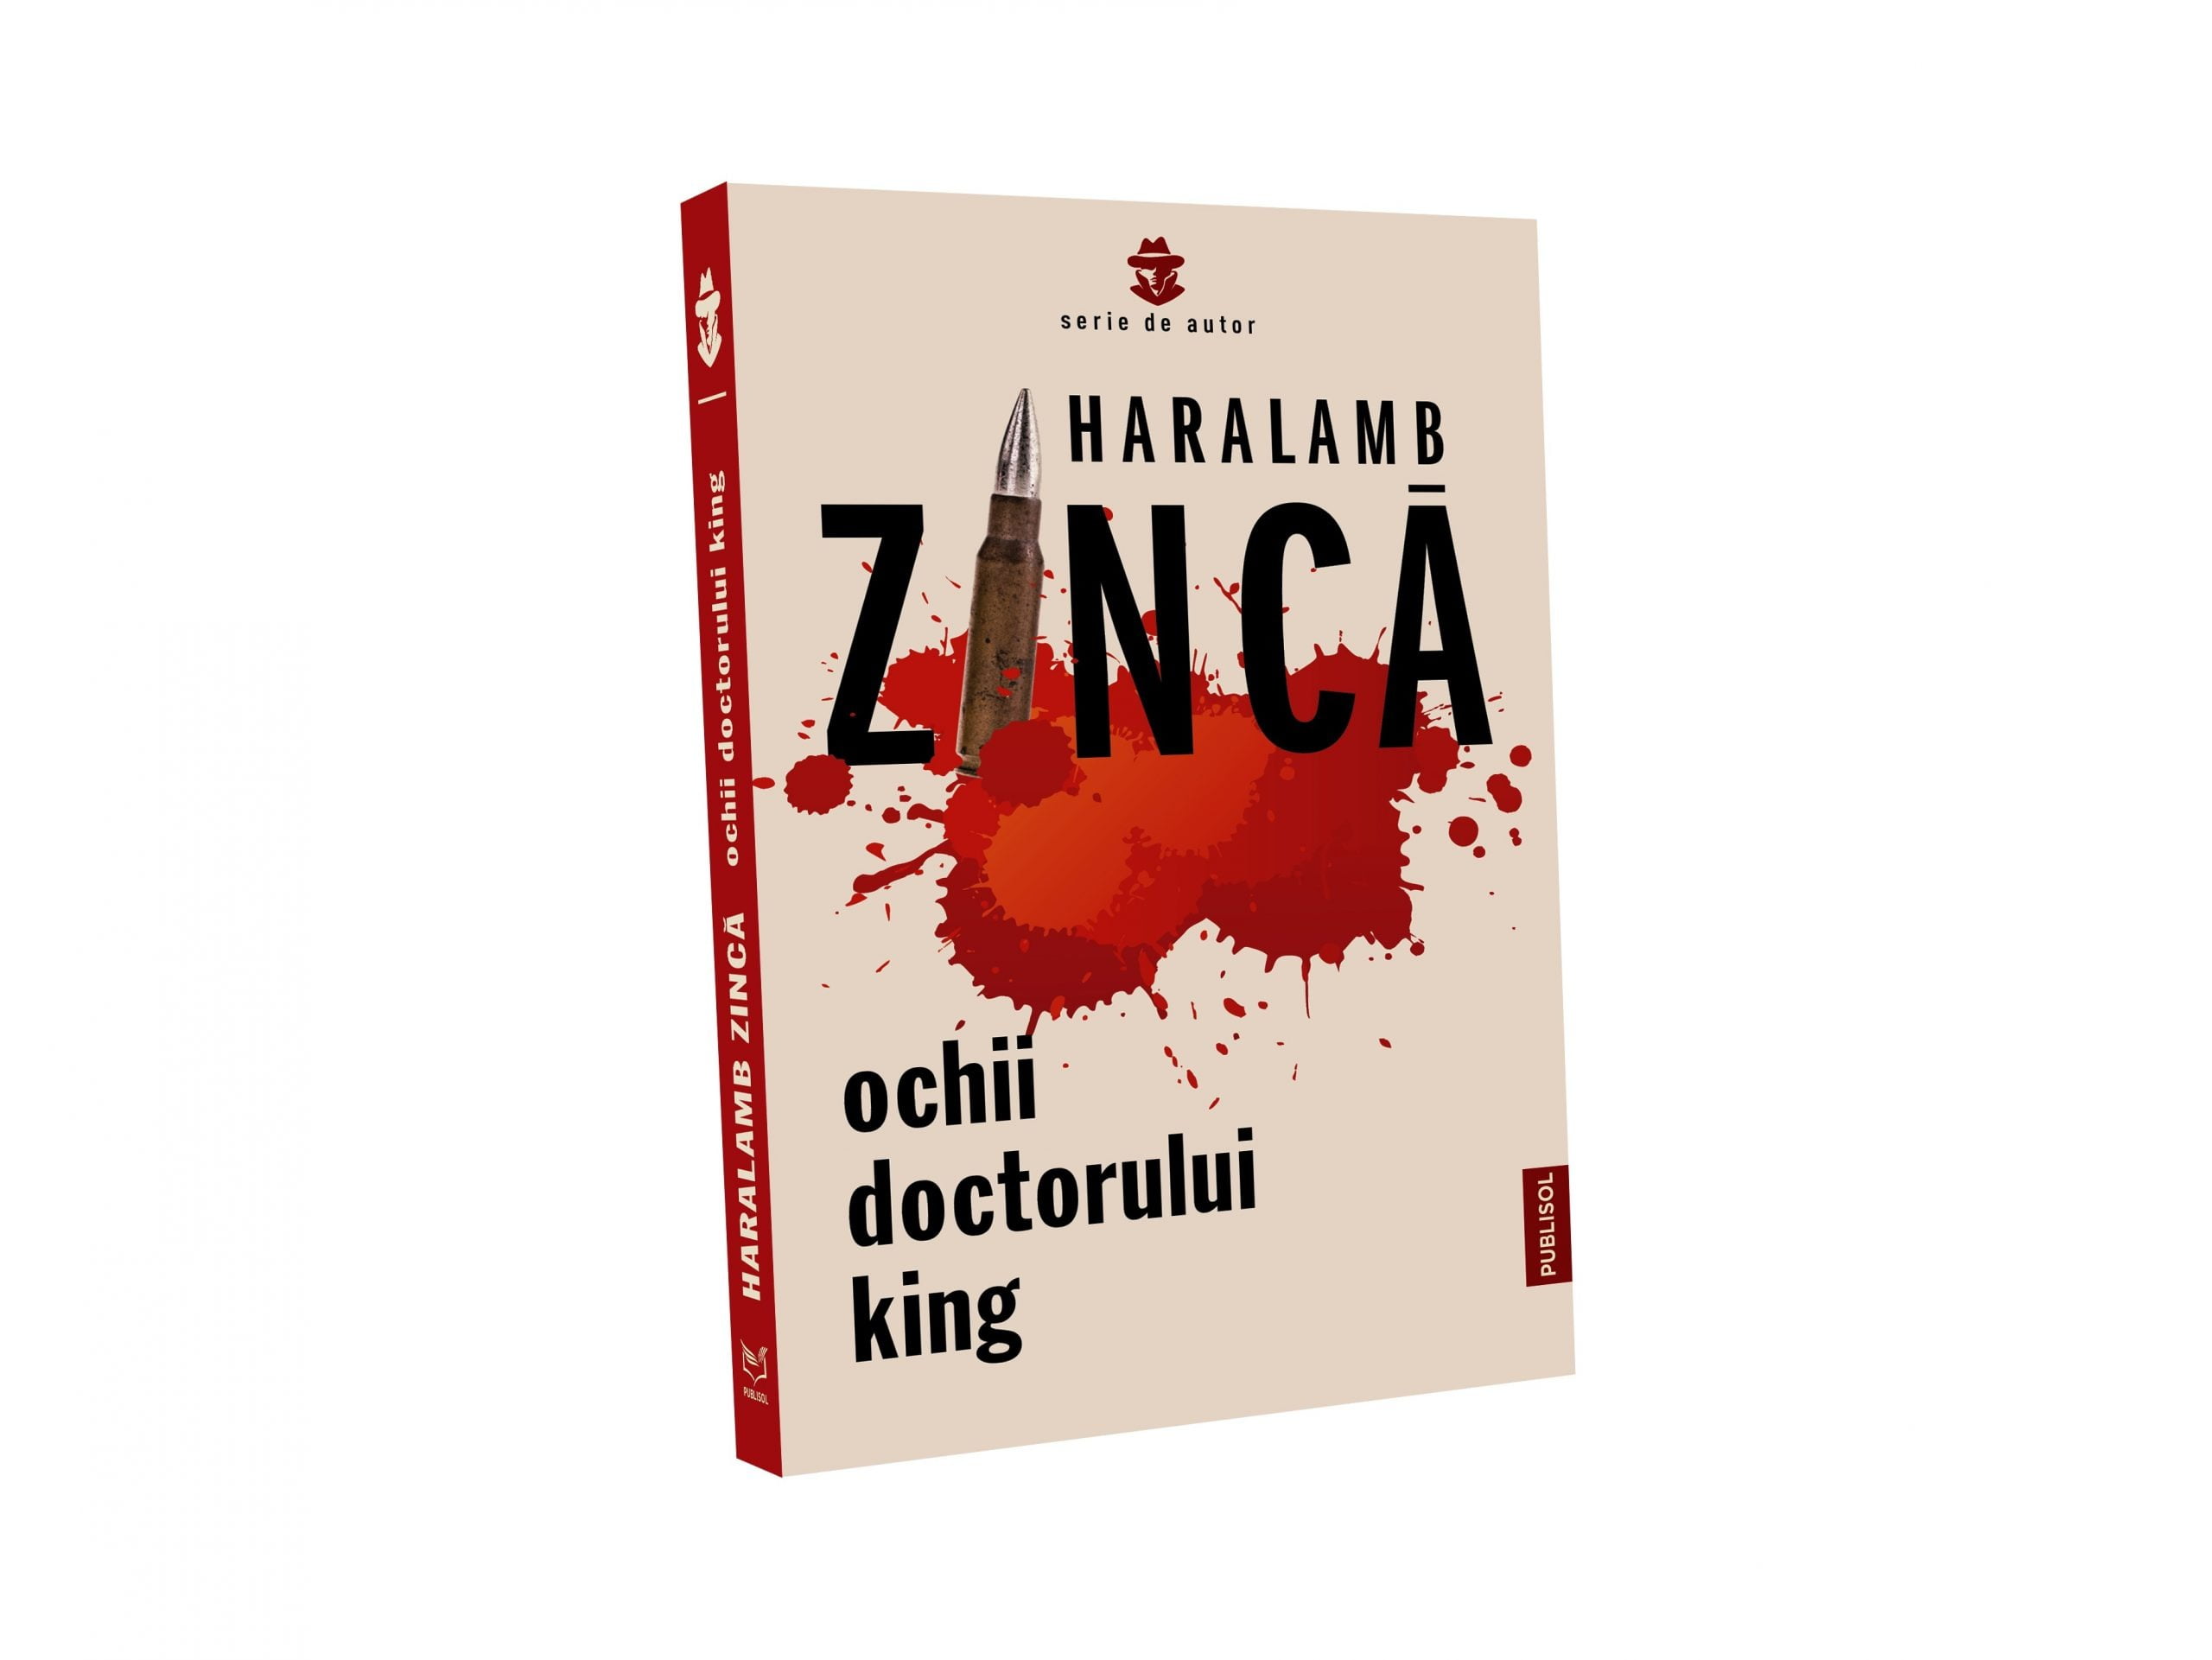 Editura Publisol continuă să publice cărțile de succes ale maestrului thrillerului polițist și de spionaj, Haralamb Zincă!